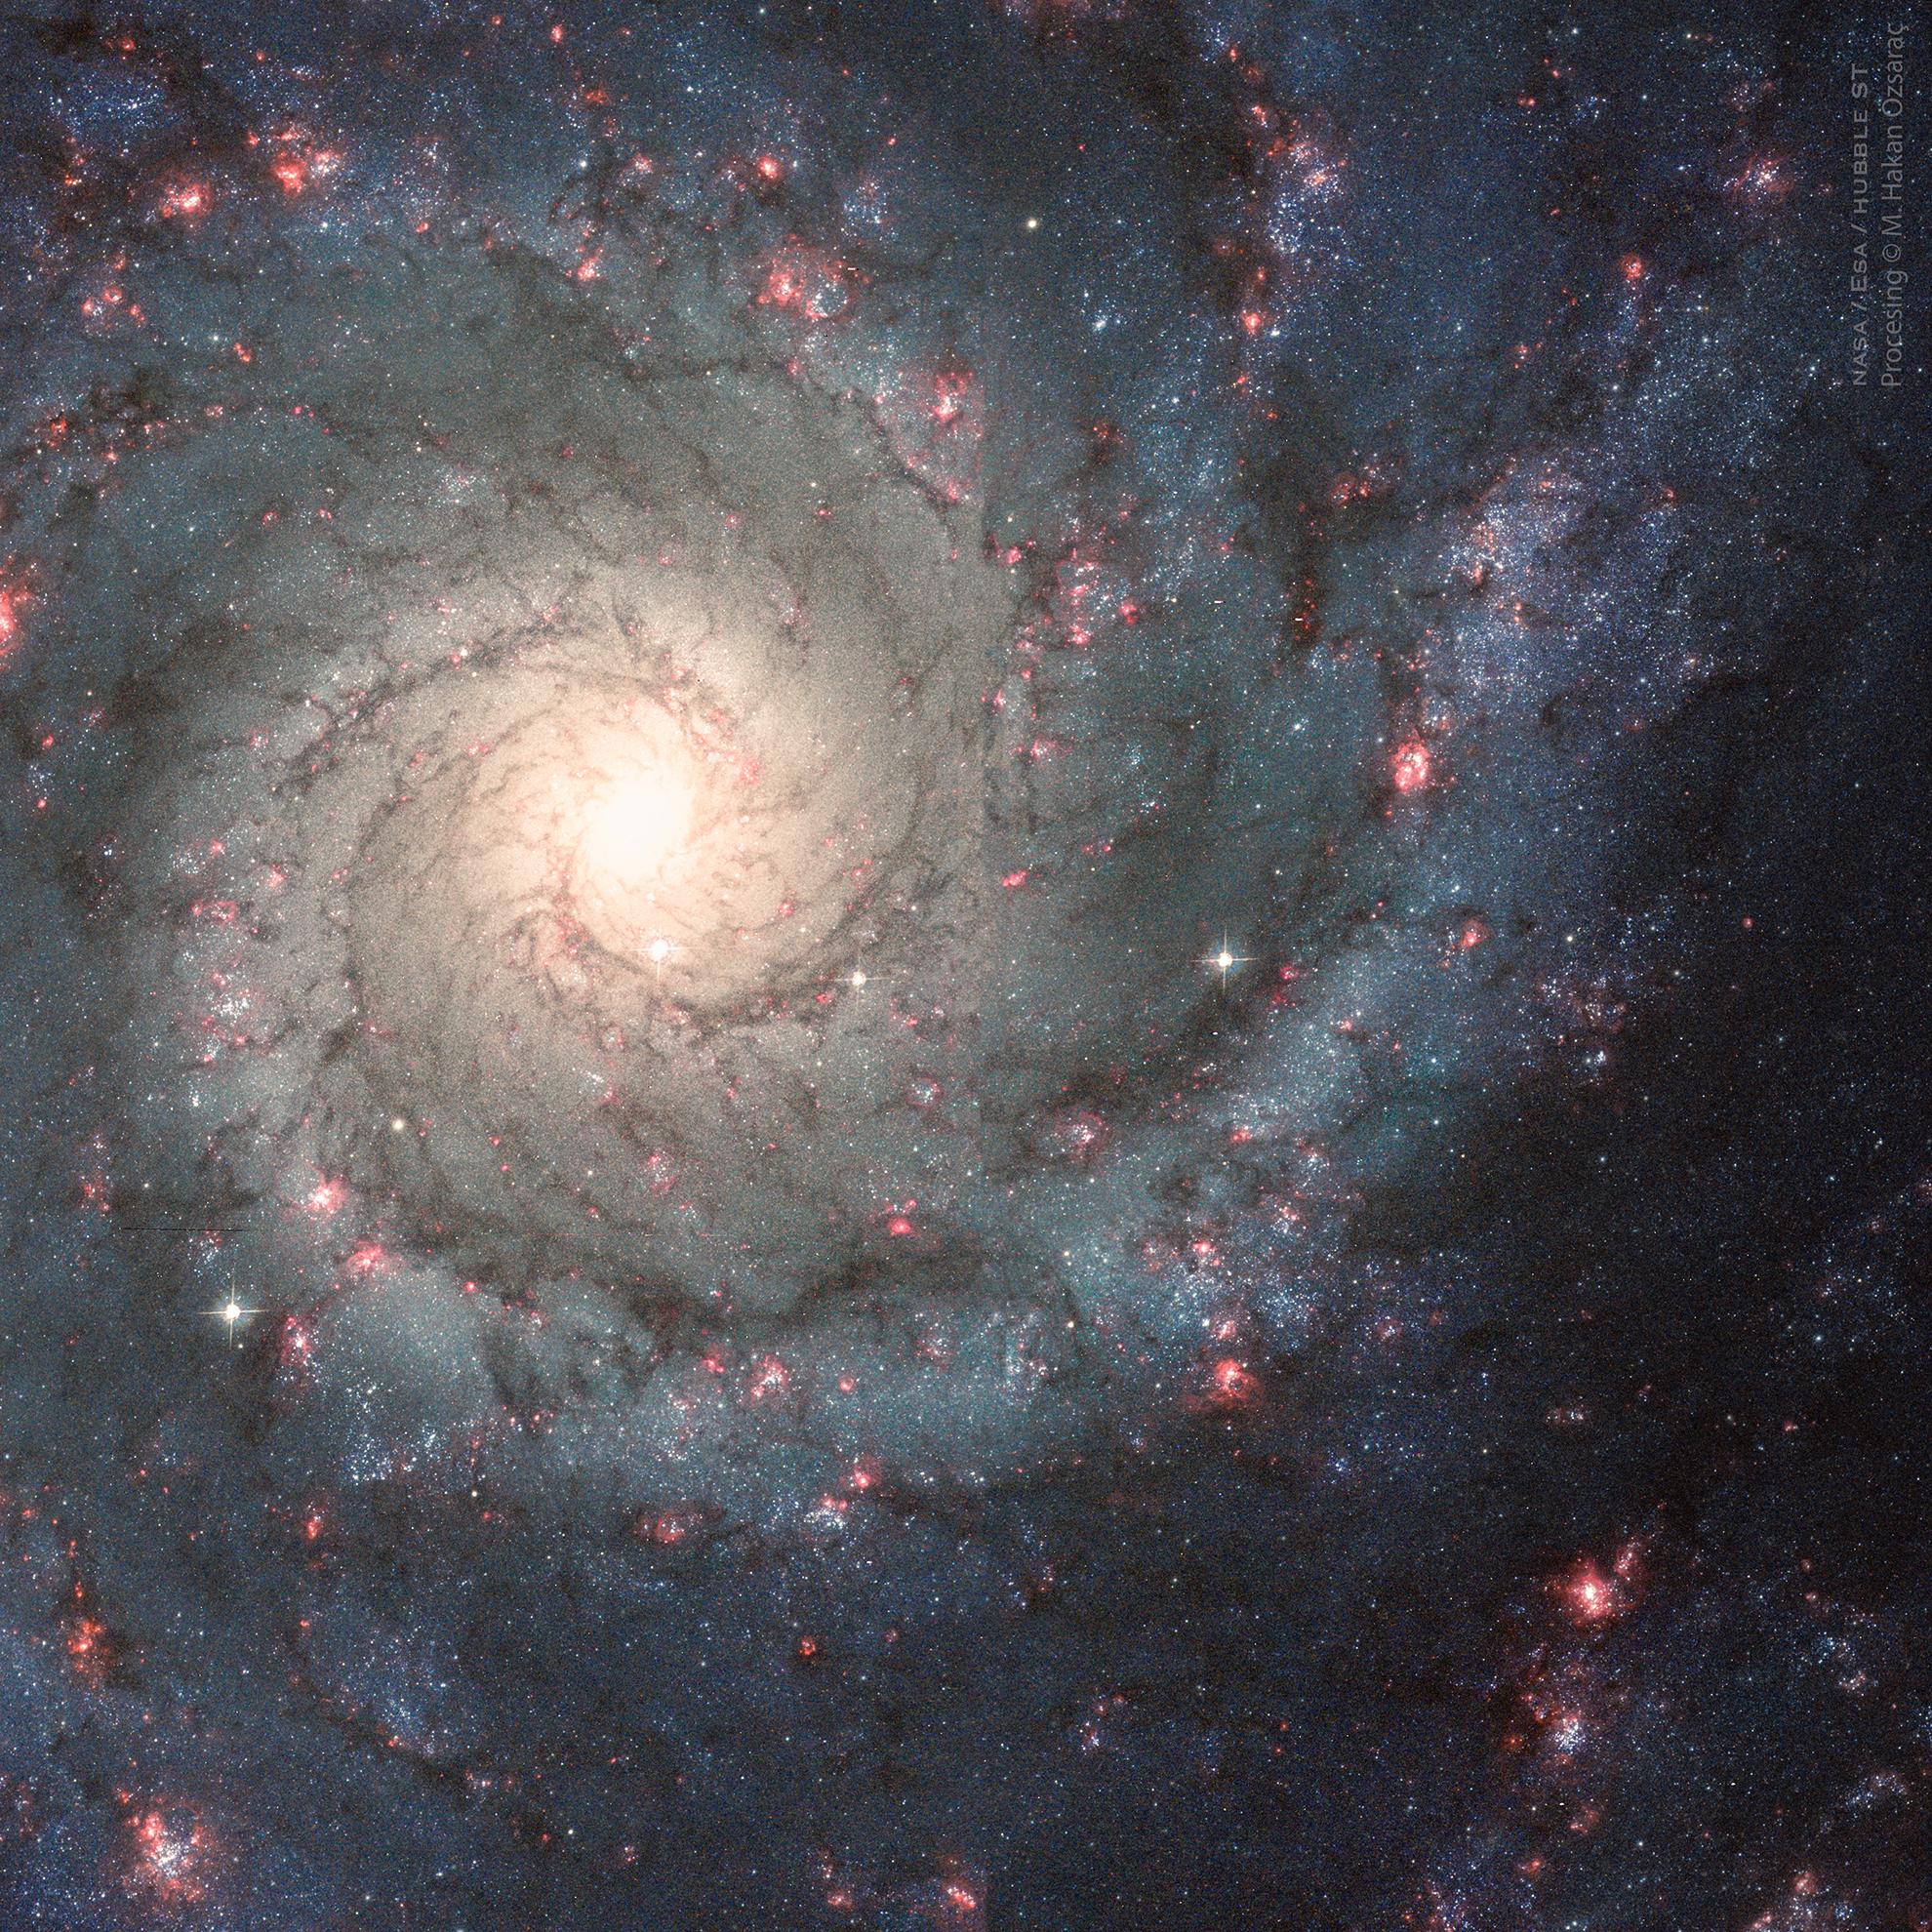 مجرّة حلزونيّة بتصميم عظيم نراها من وجهها حيث يظهر مركزها بلون مصفرّ وتتلولب منه أذرع حلزونيّة تزيّنها عناقيد النجوم الزرقاء ومناطق التشكّل النجمي المحمرّة.